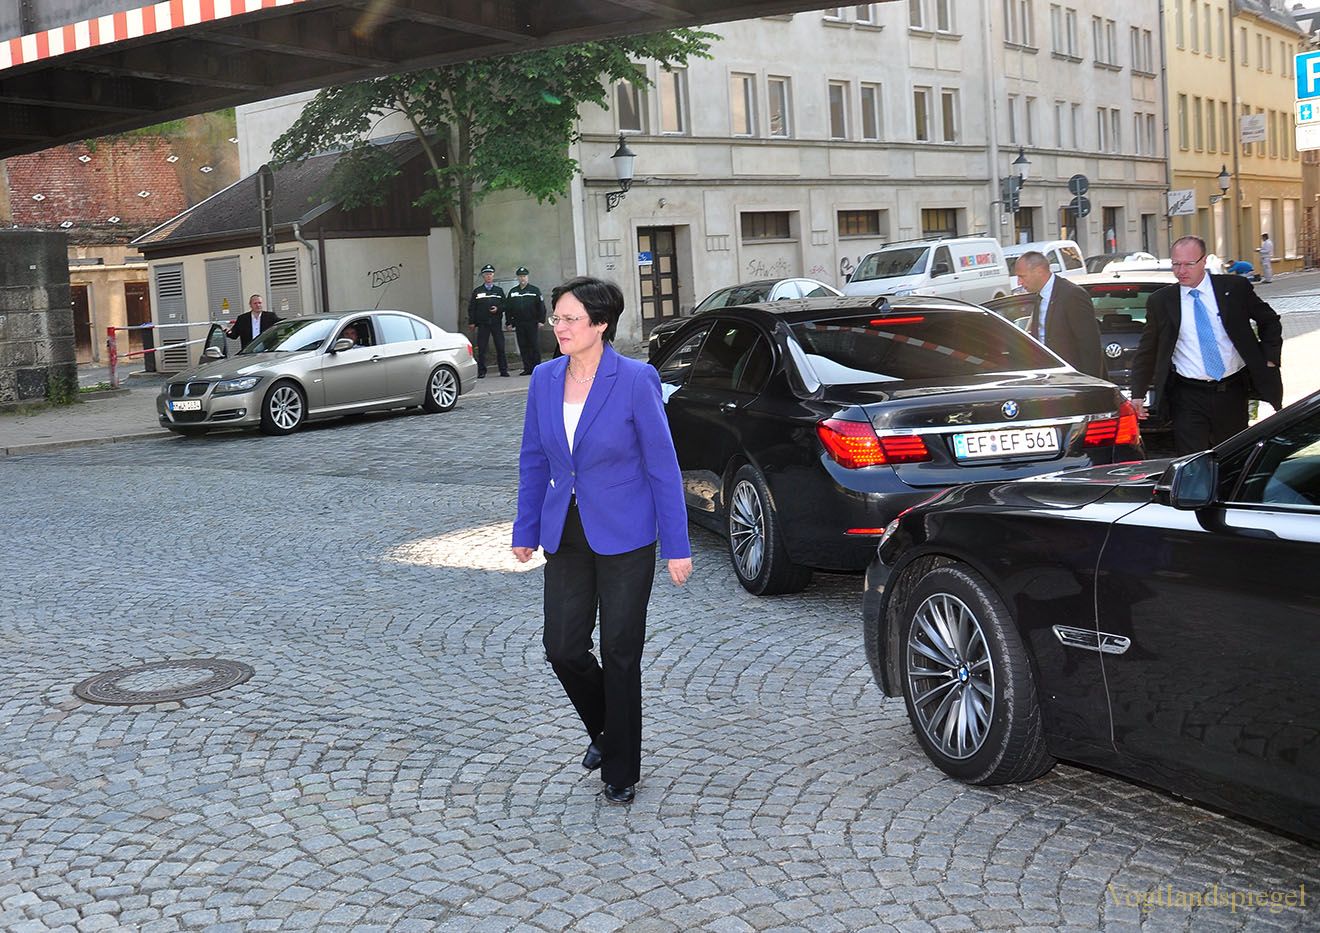 Thüringens Ministerpräsidentin besuchte Sommerpalais und Greizer Park